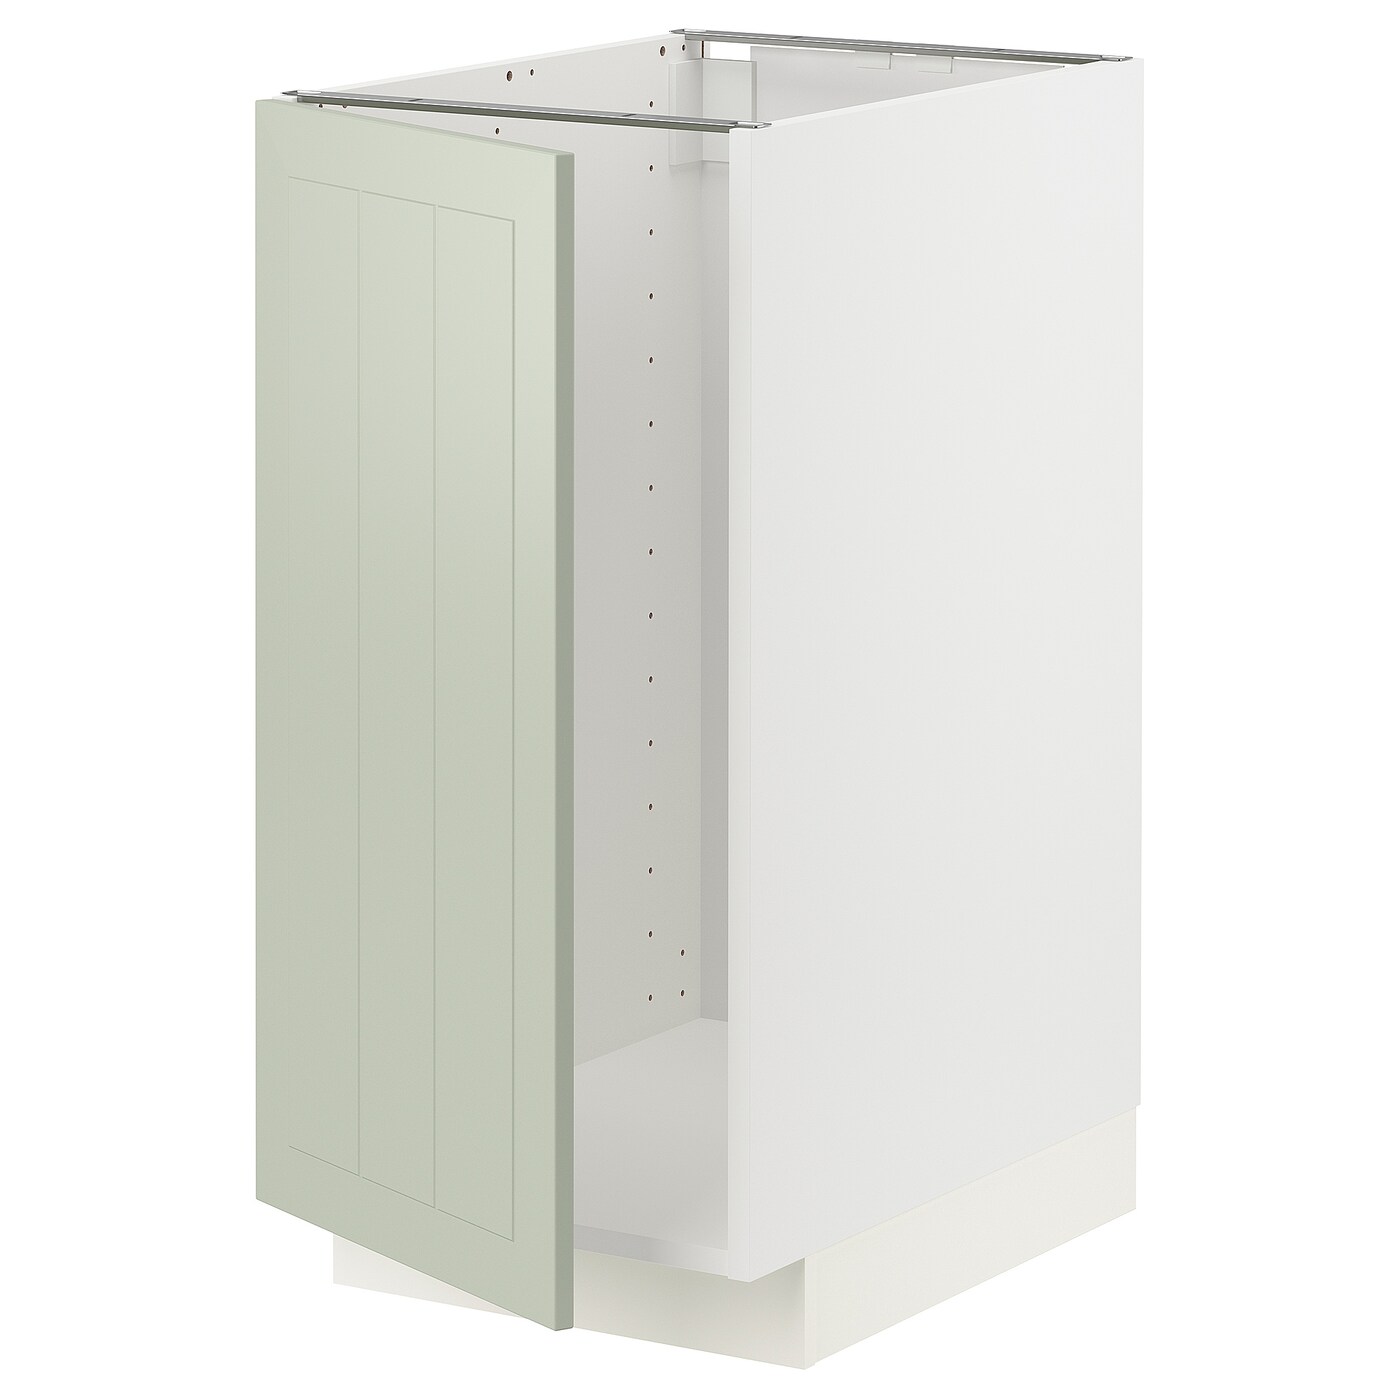 Напольный кухонный шкаф  - IKEA METOD, 88x62x40см, белый/светло-зеленый, МЕТОД ИКЕА